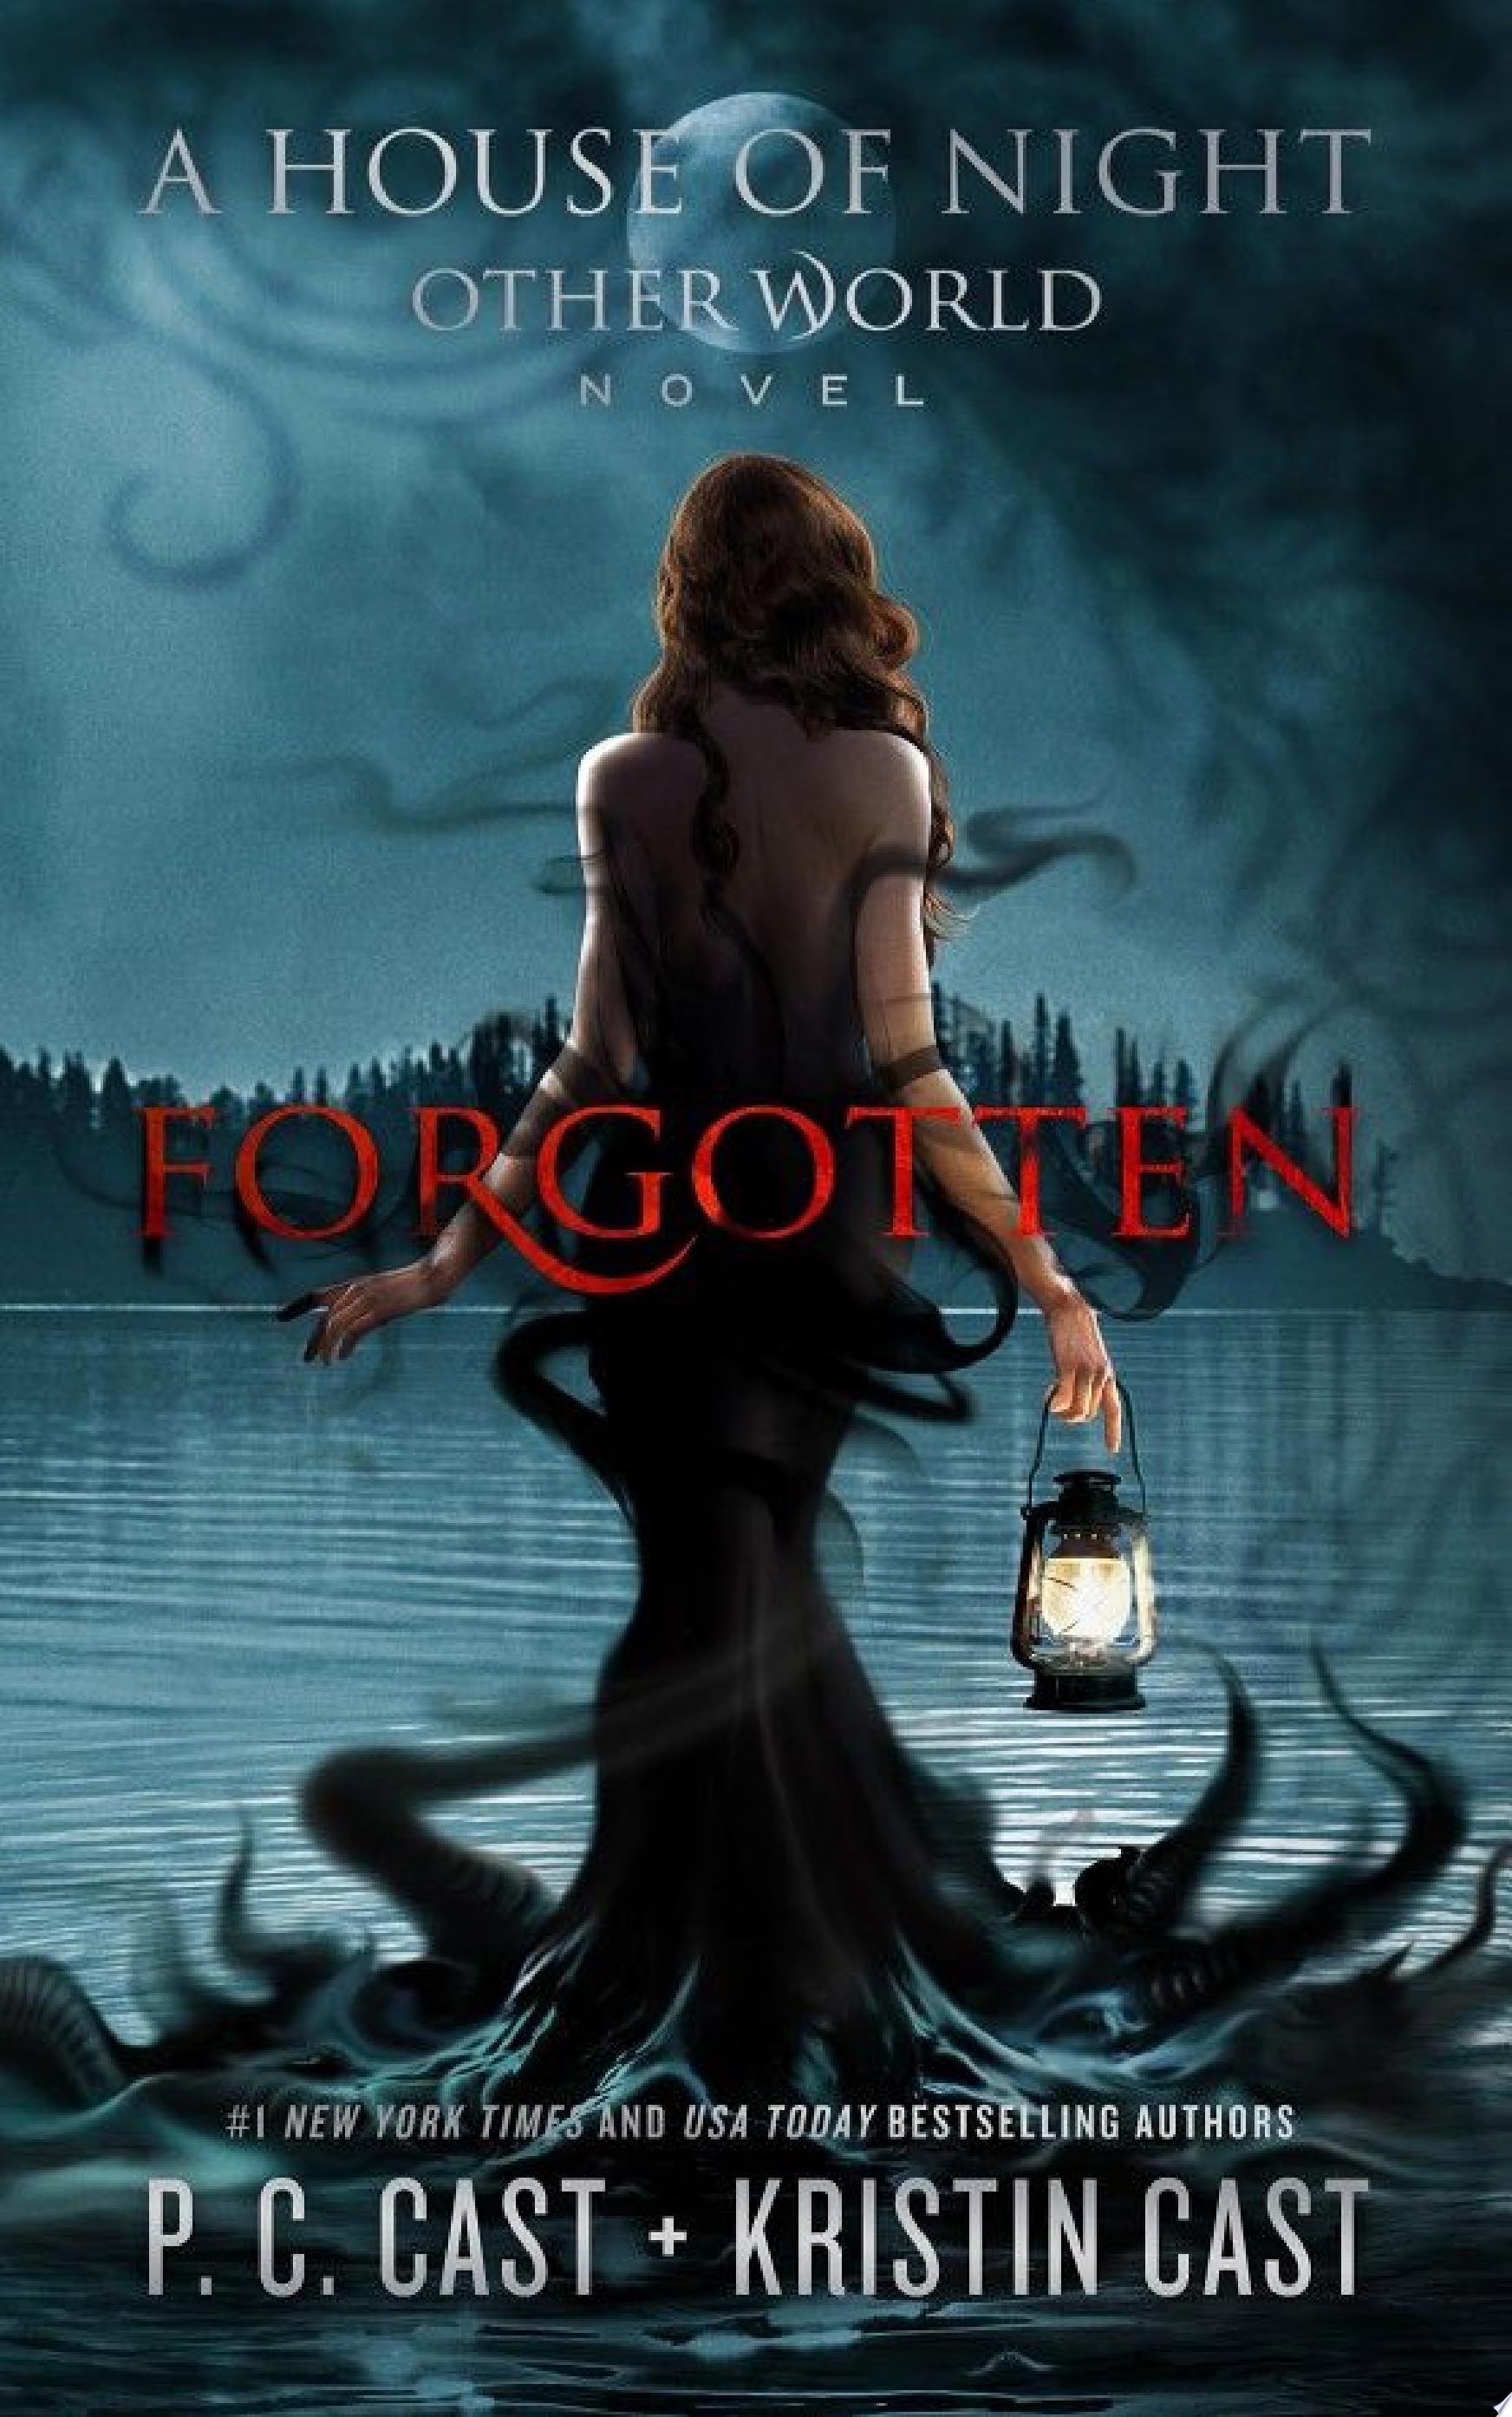 Image for "Forgotten"